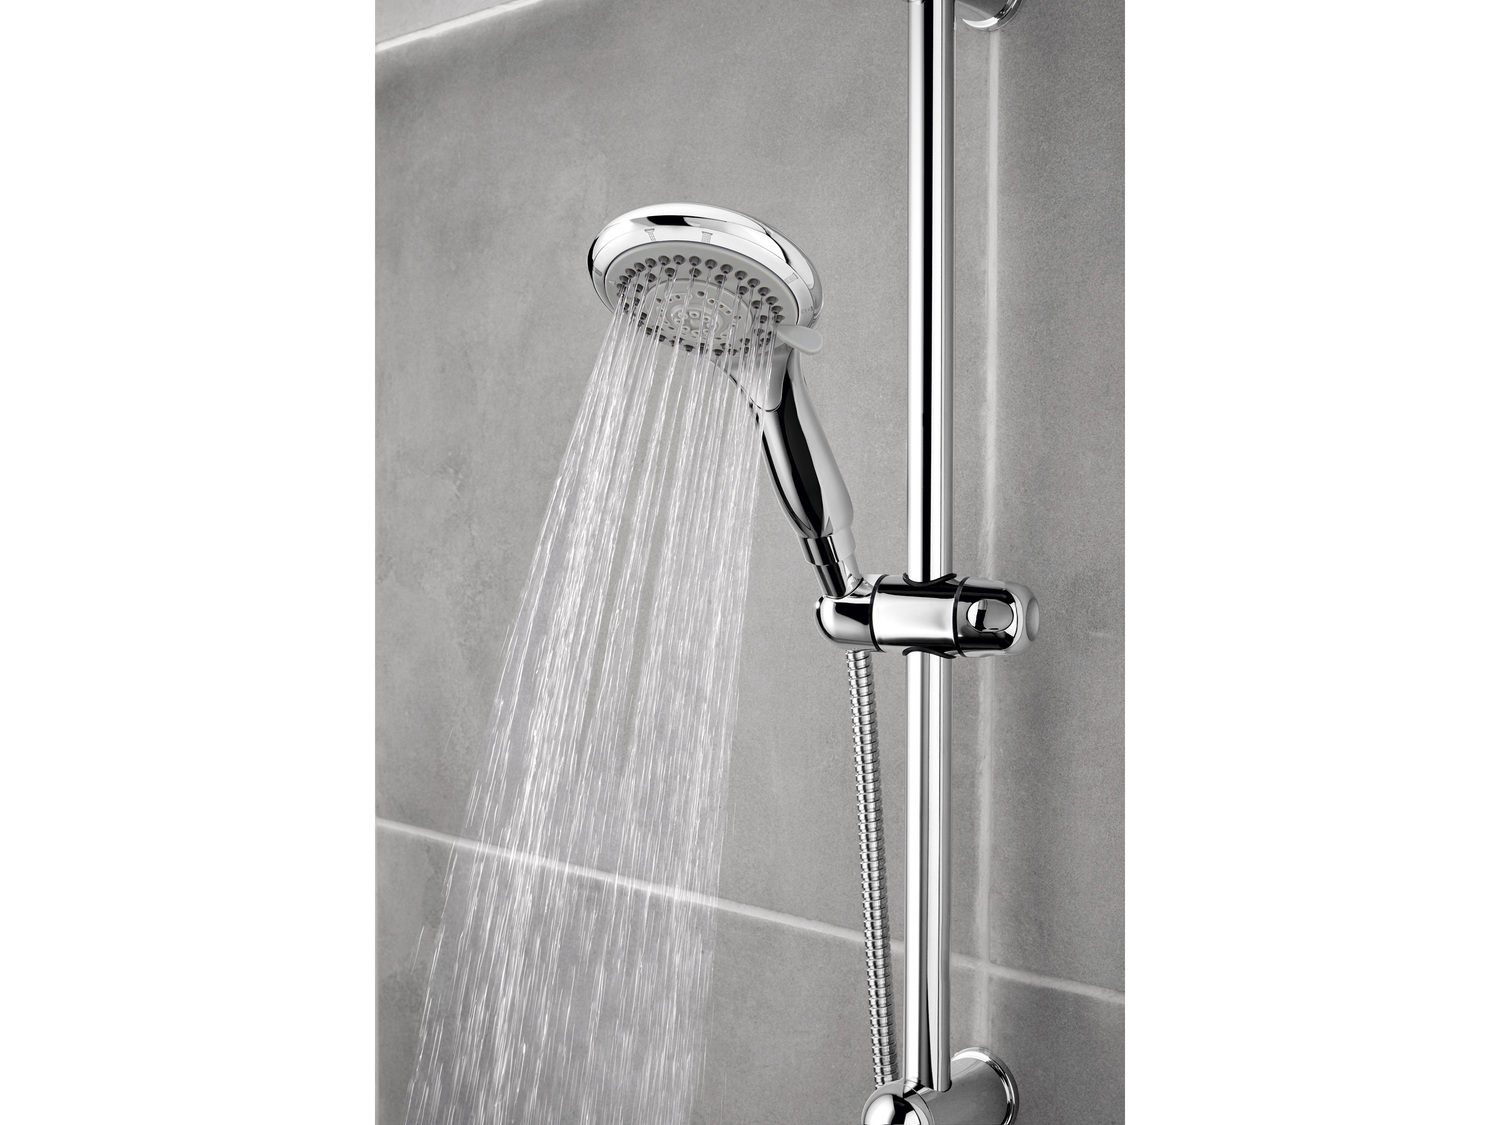 Słuchawka prysznicowa Miomare, cena 29,99 PLN 
- wąż prysznicowy o dł. 150 ...